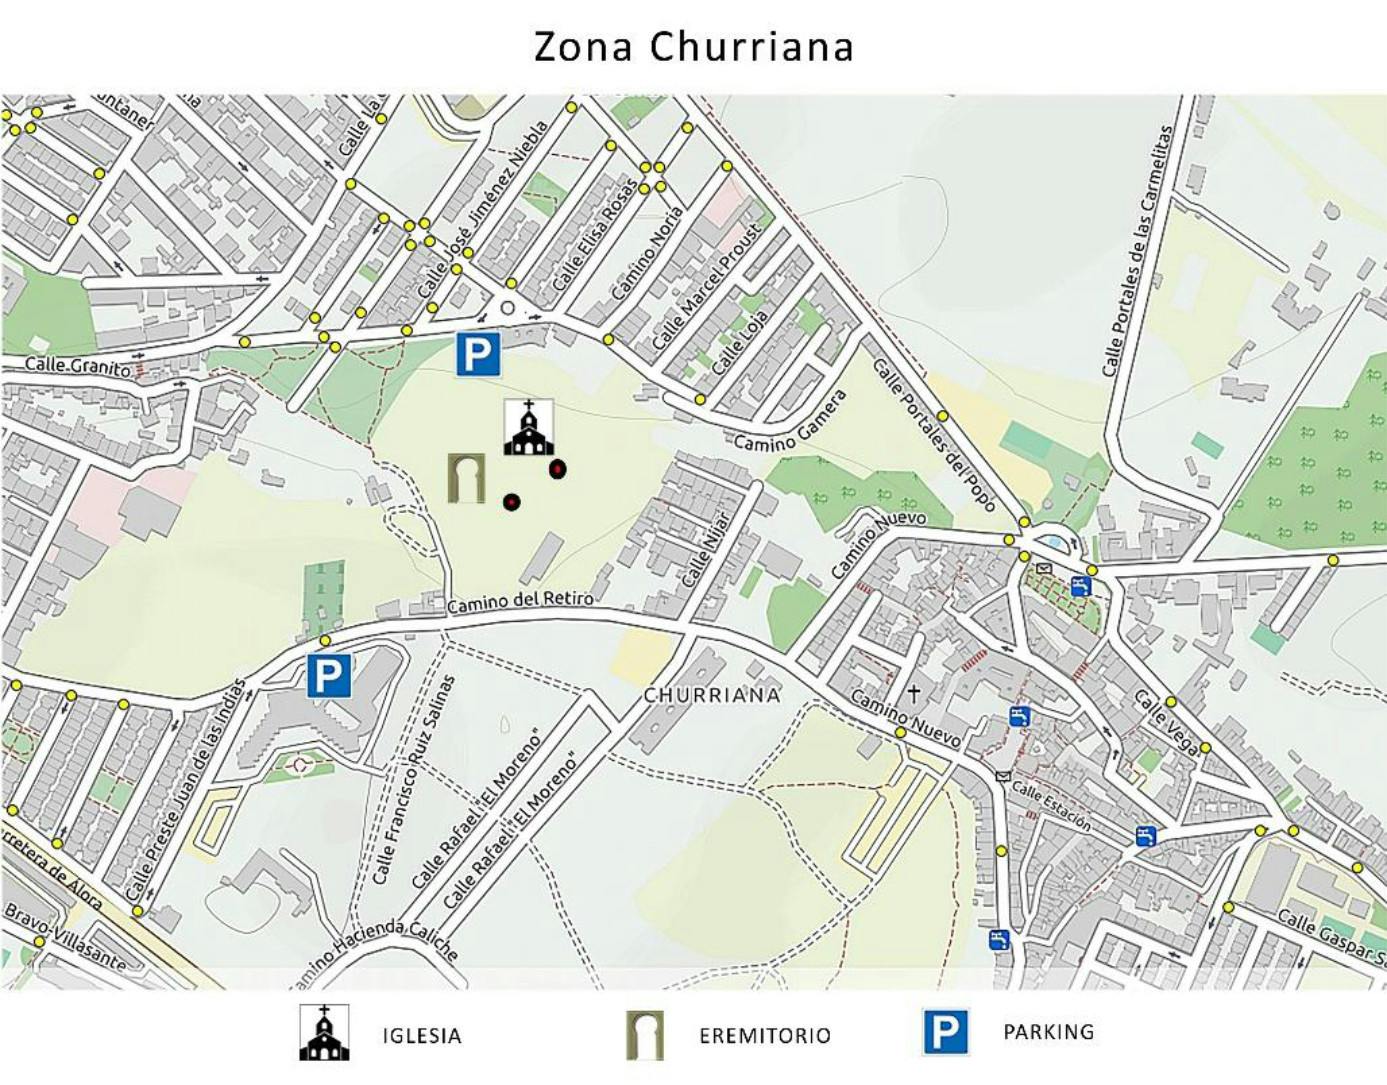 Mapa de ubicación de las ruinas mozárabes dentro de Churriana